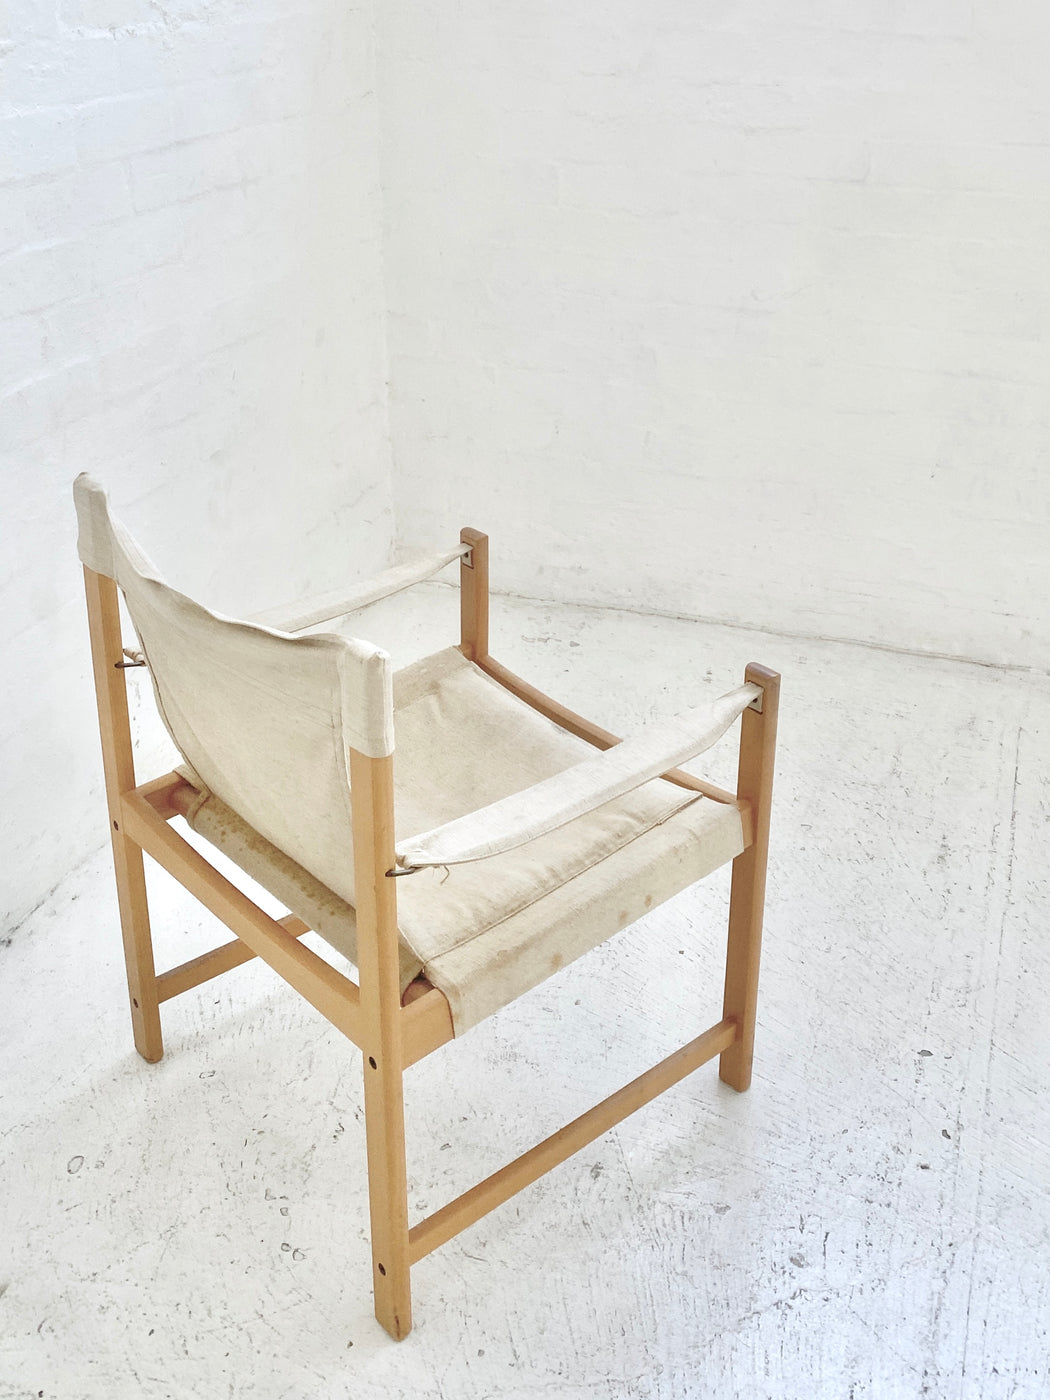 Danish Safari Chair